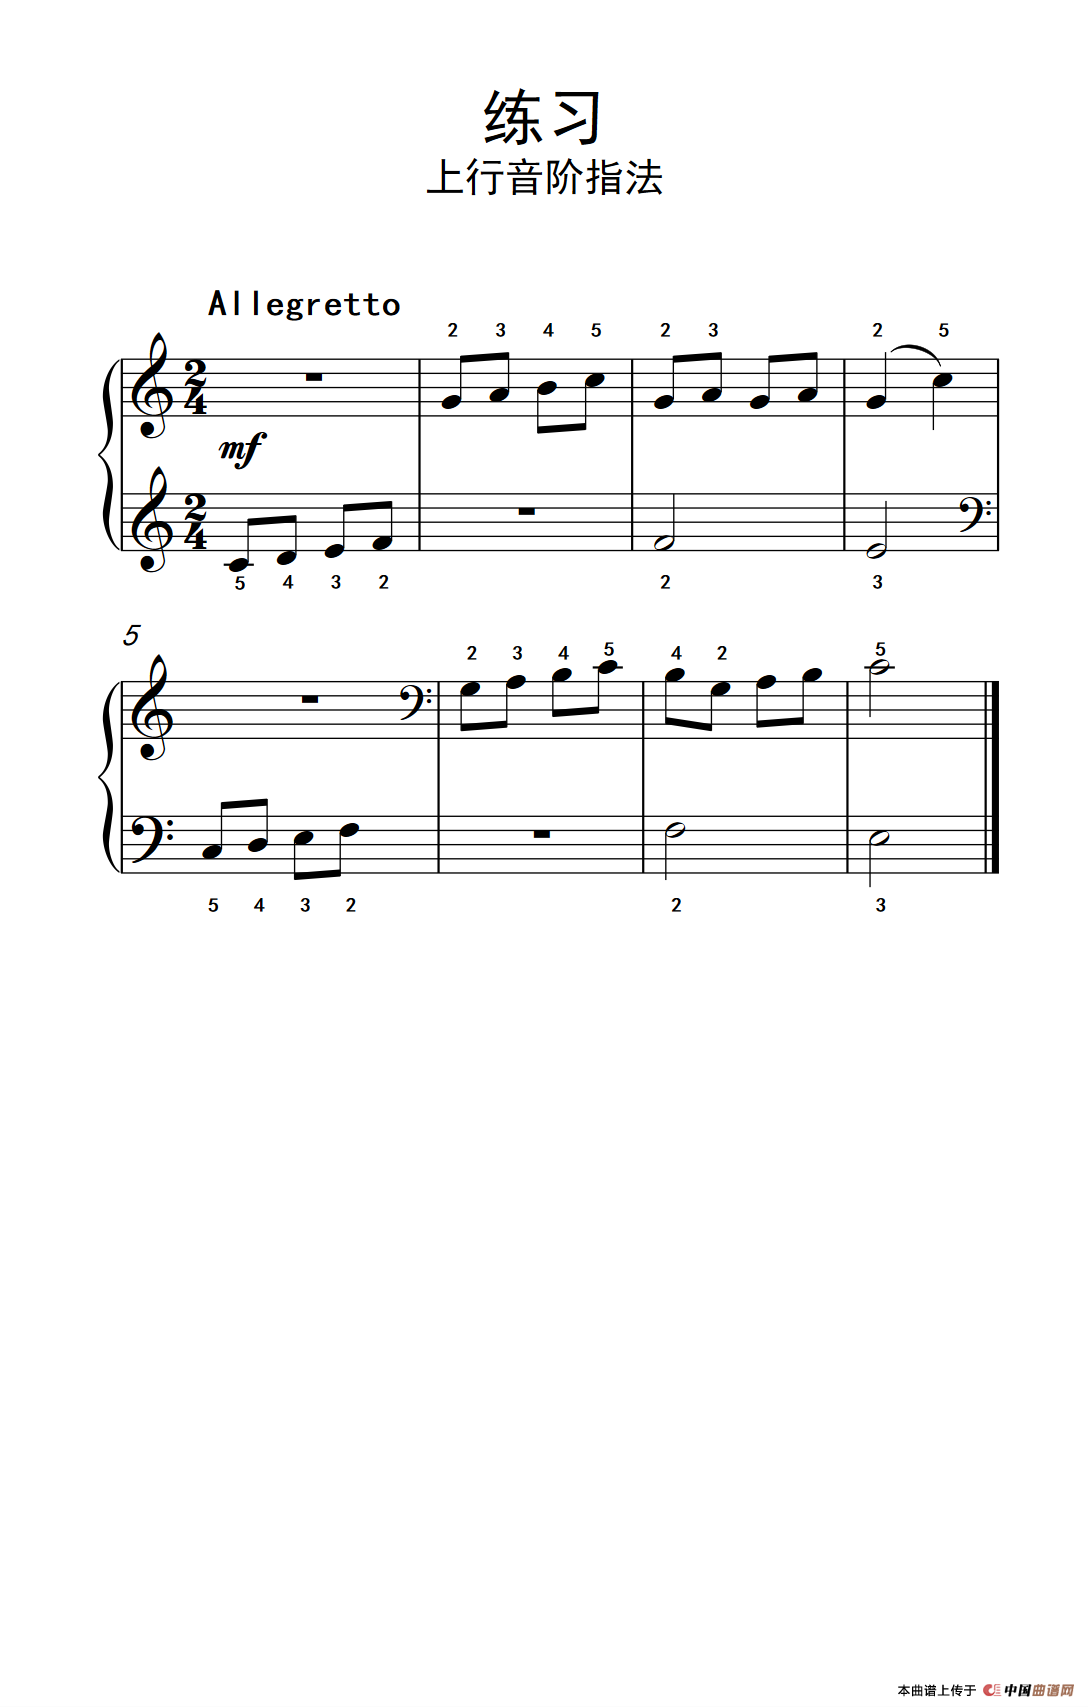 《练习 上行音阶指法》钢琴曲谱图分享